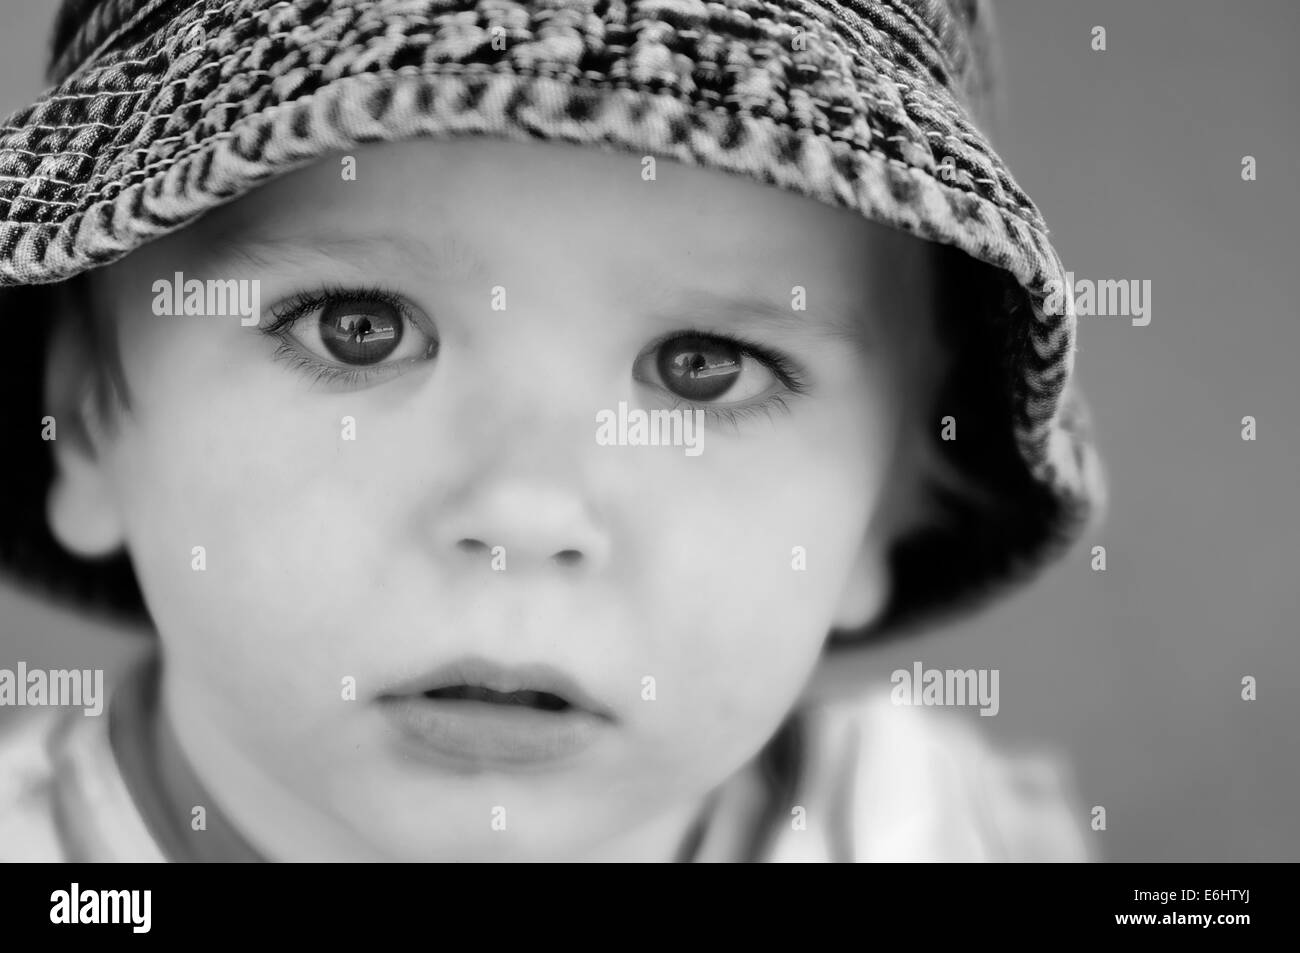 Porträt einer wunderschönen 2 Jahre altes Kind schauen direkt in die Kamera Stockfoto